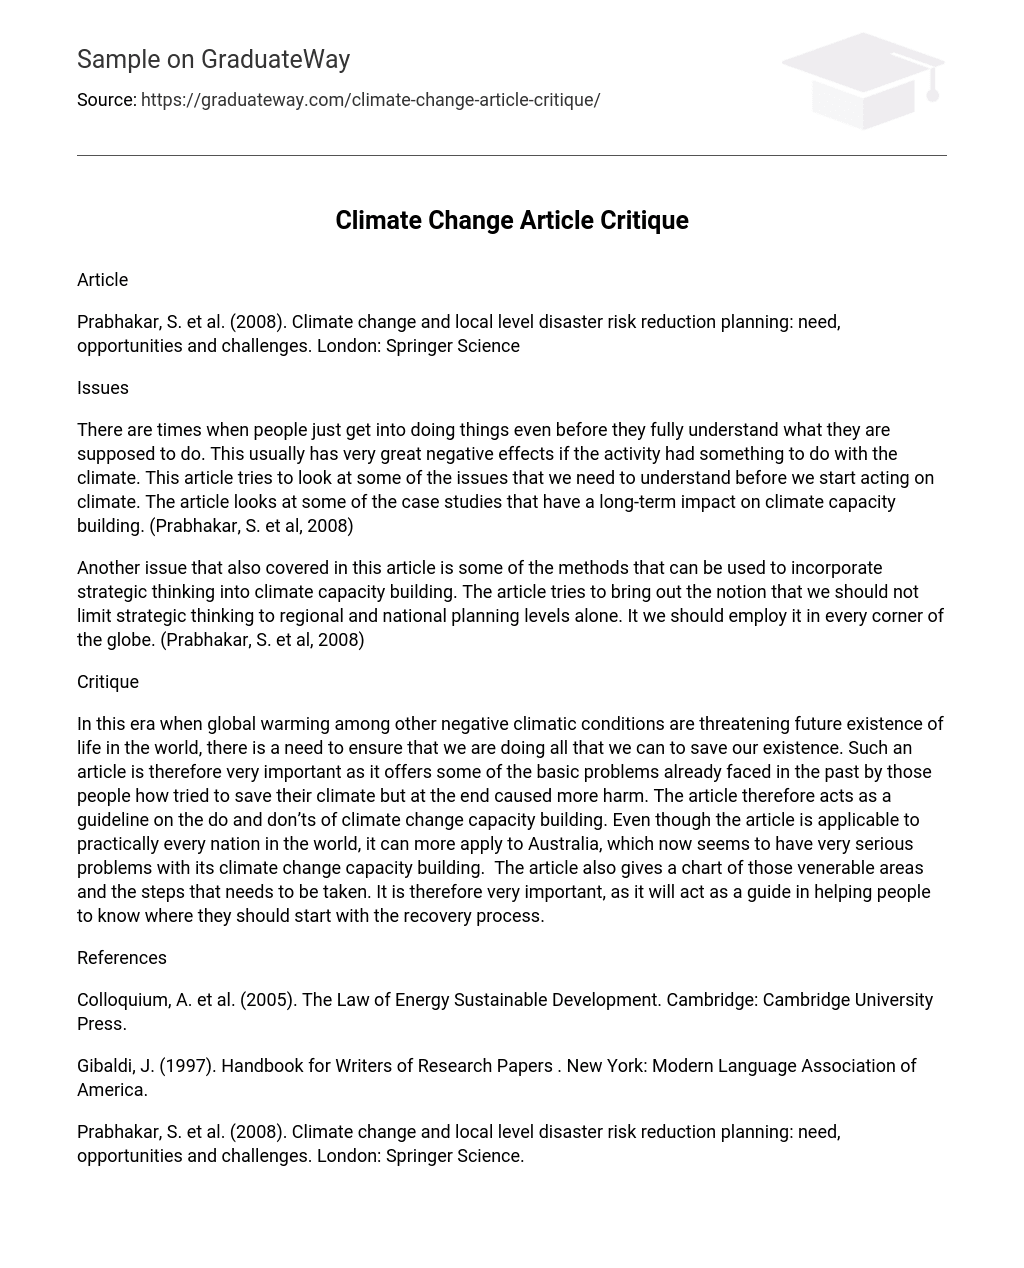 Climate Change Article Critique